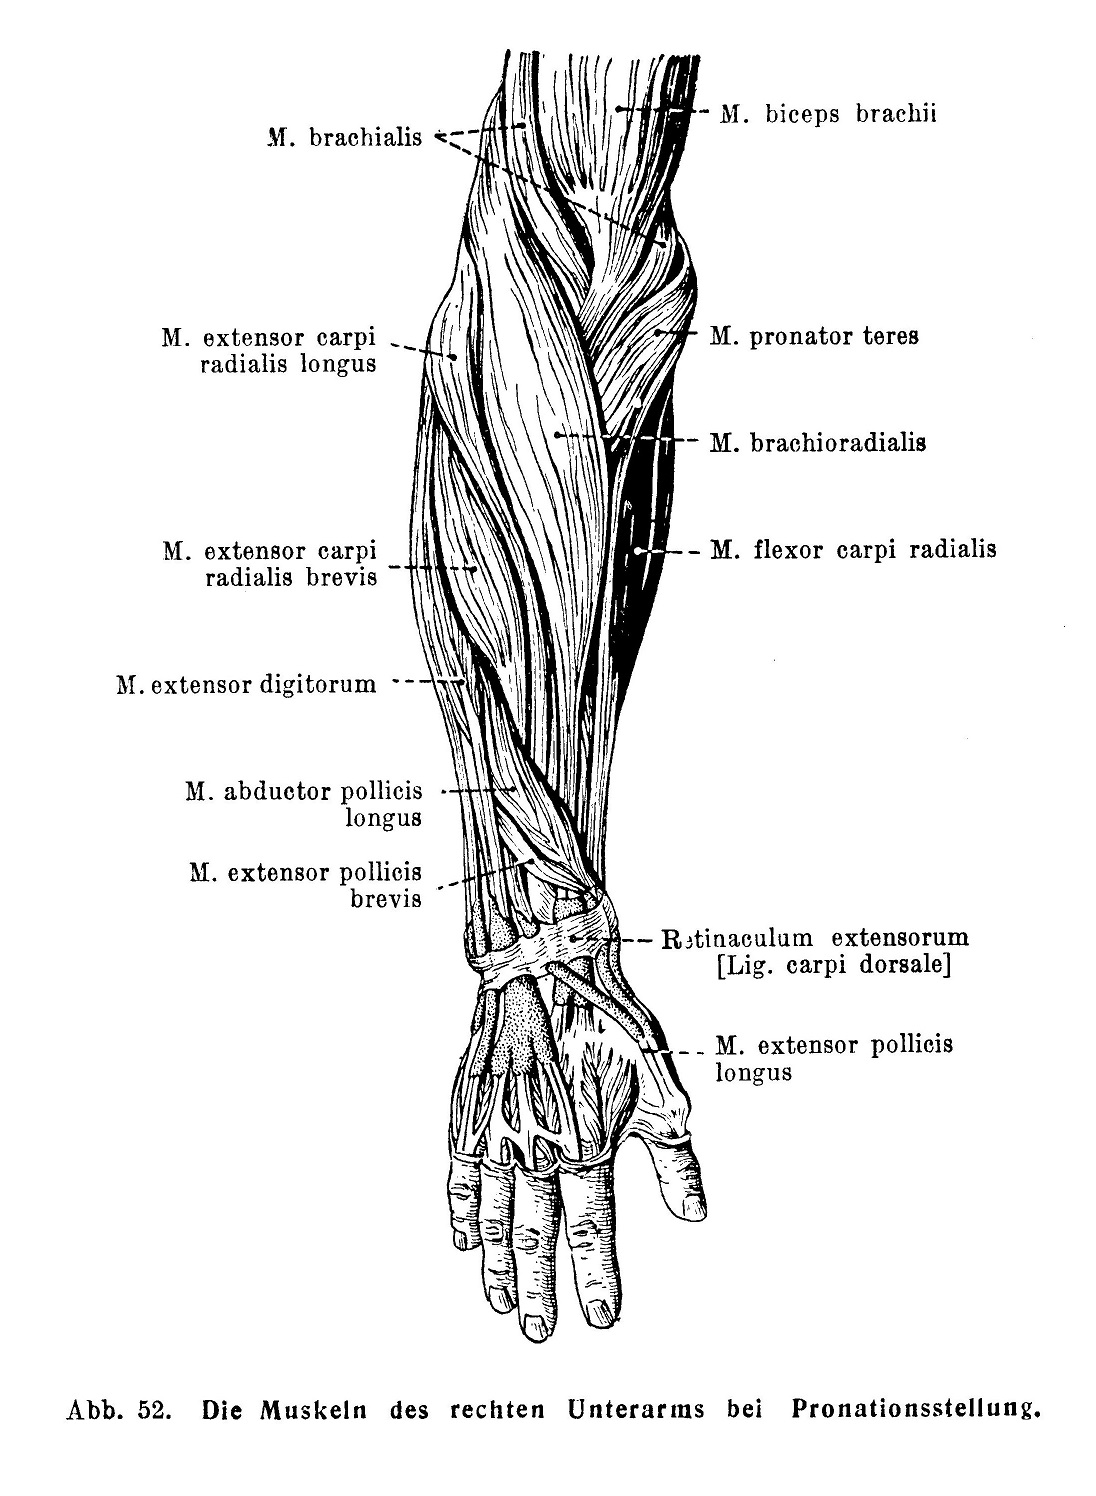 Die Muskeln des rechten Unterarms bie Pronationsstellung